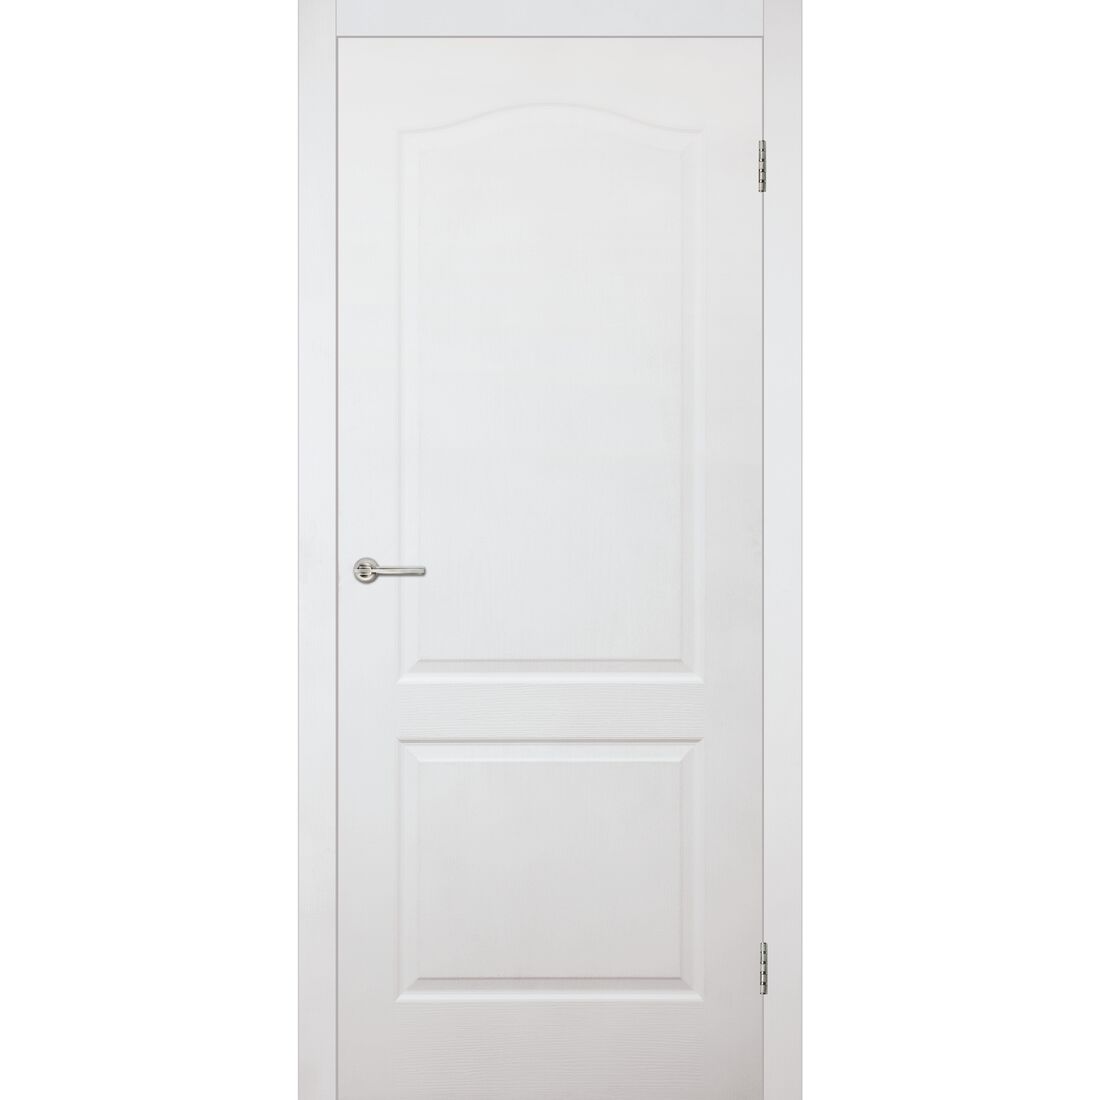 Мазонитовые двери, Мазонитовые двери, Грунтовый белый, Распашная, Одностворчатая, 800 х 2000 мм